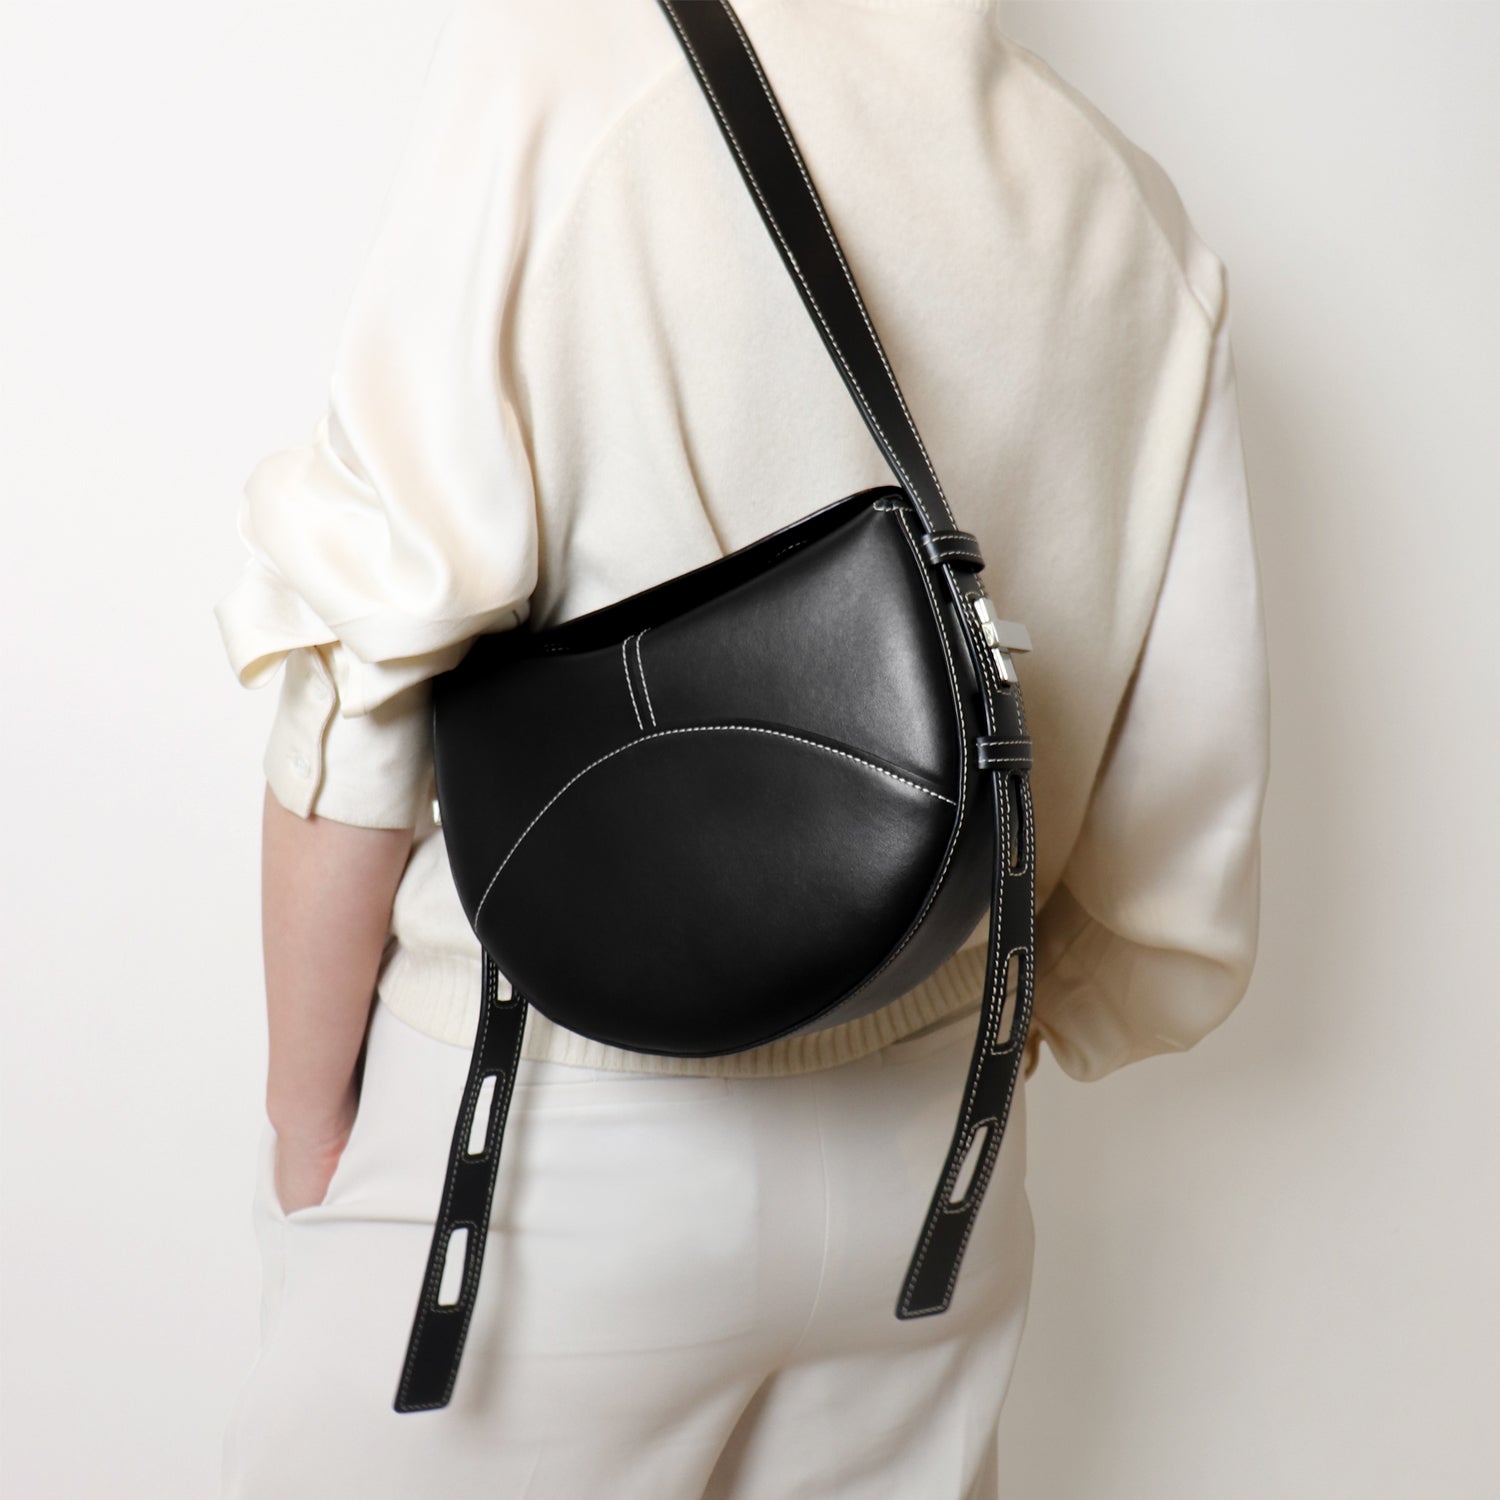 Shaker Twist Bag in black, worn by a model